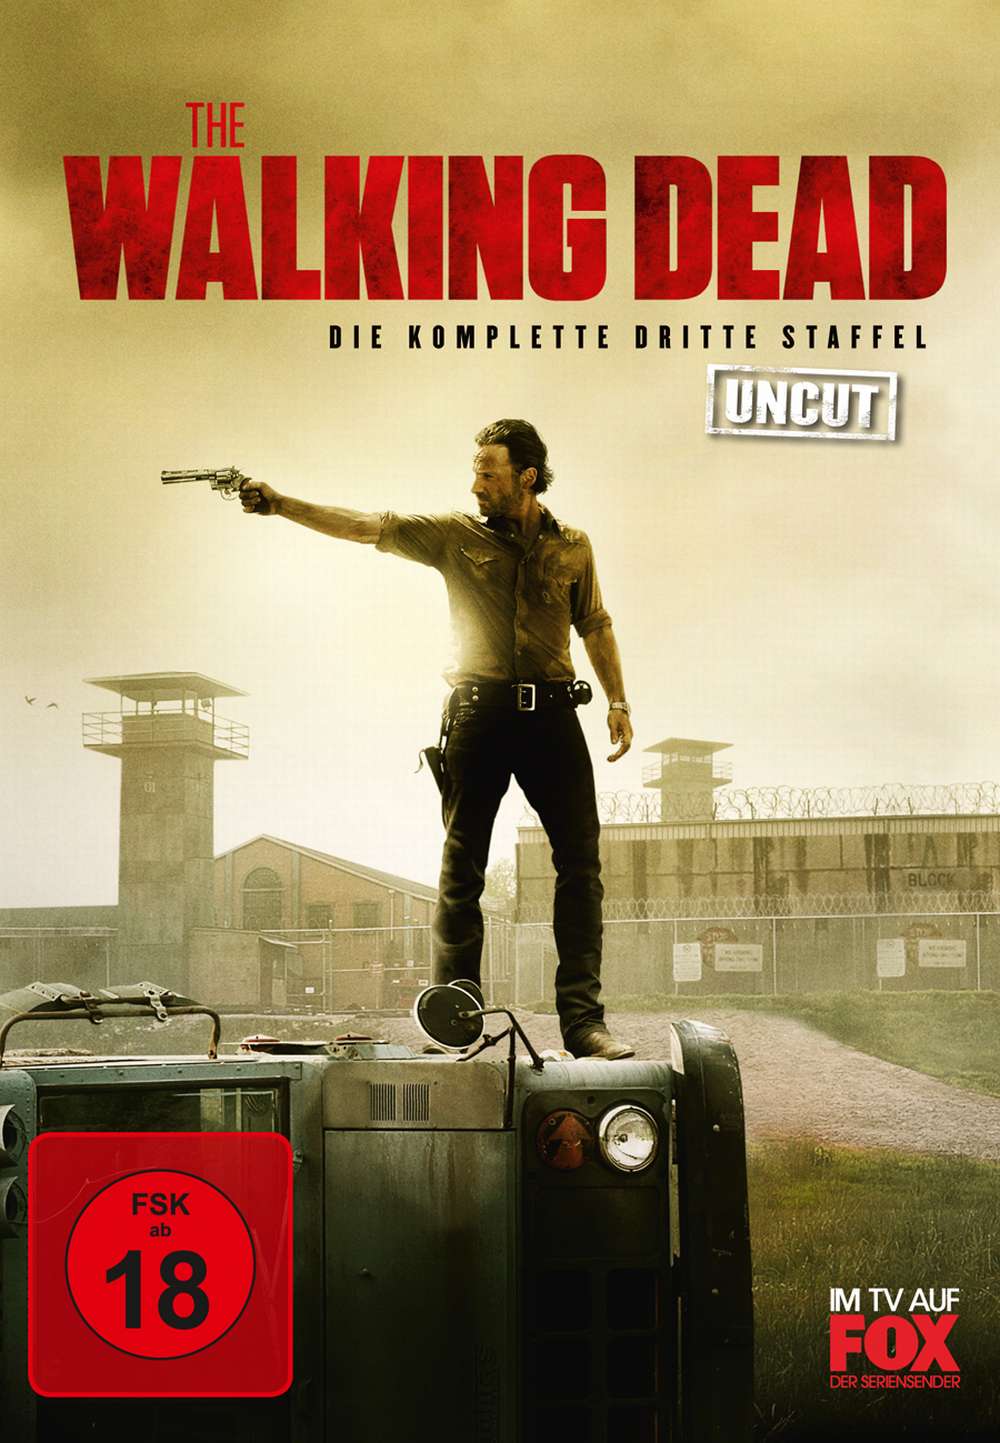 The Walking Dead Staffel 5 Dvd Amazon